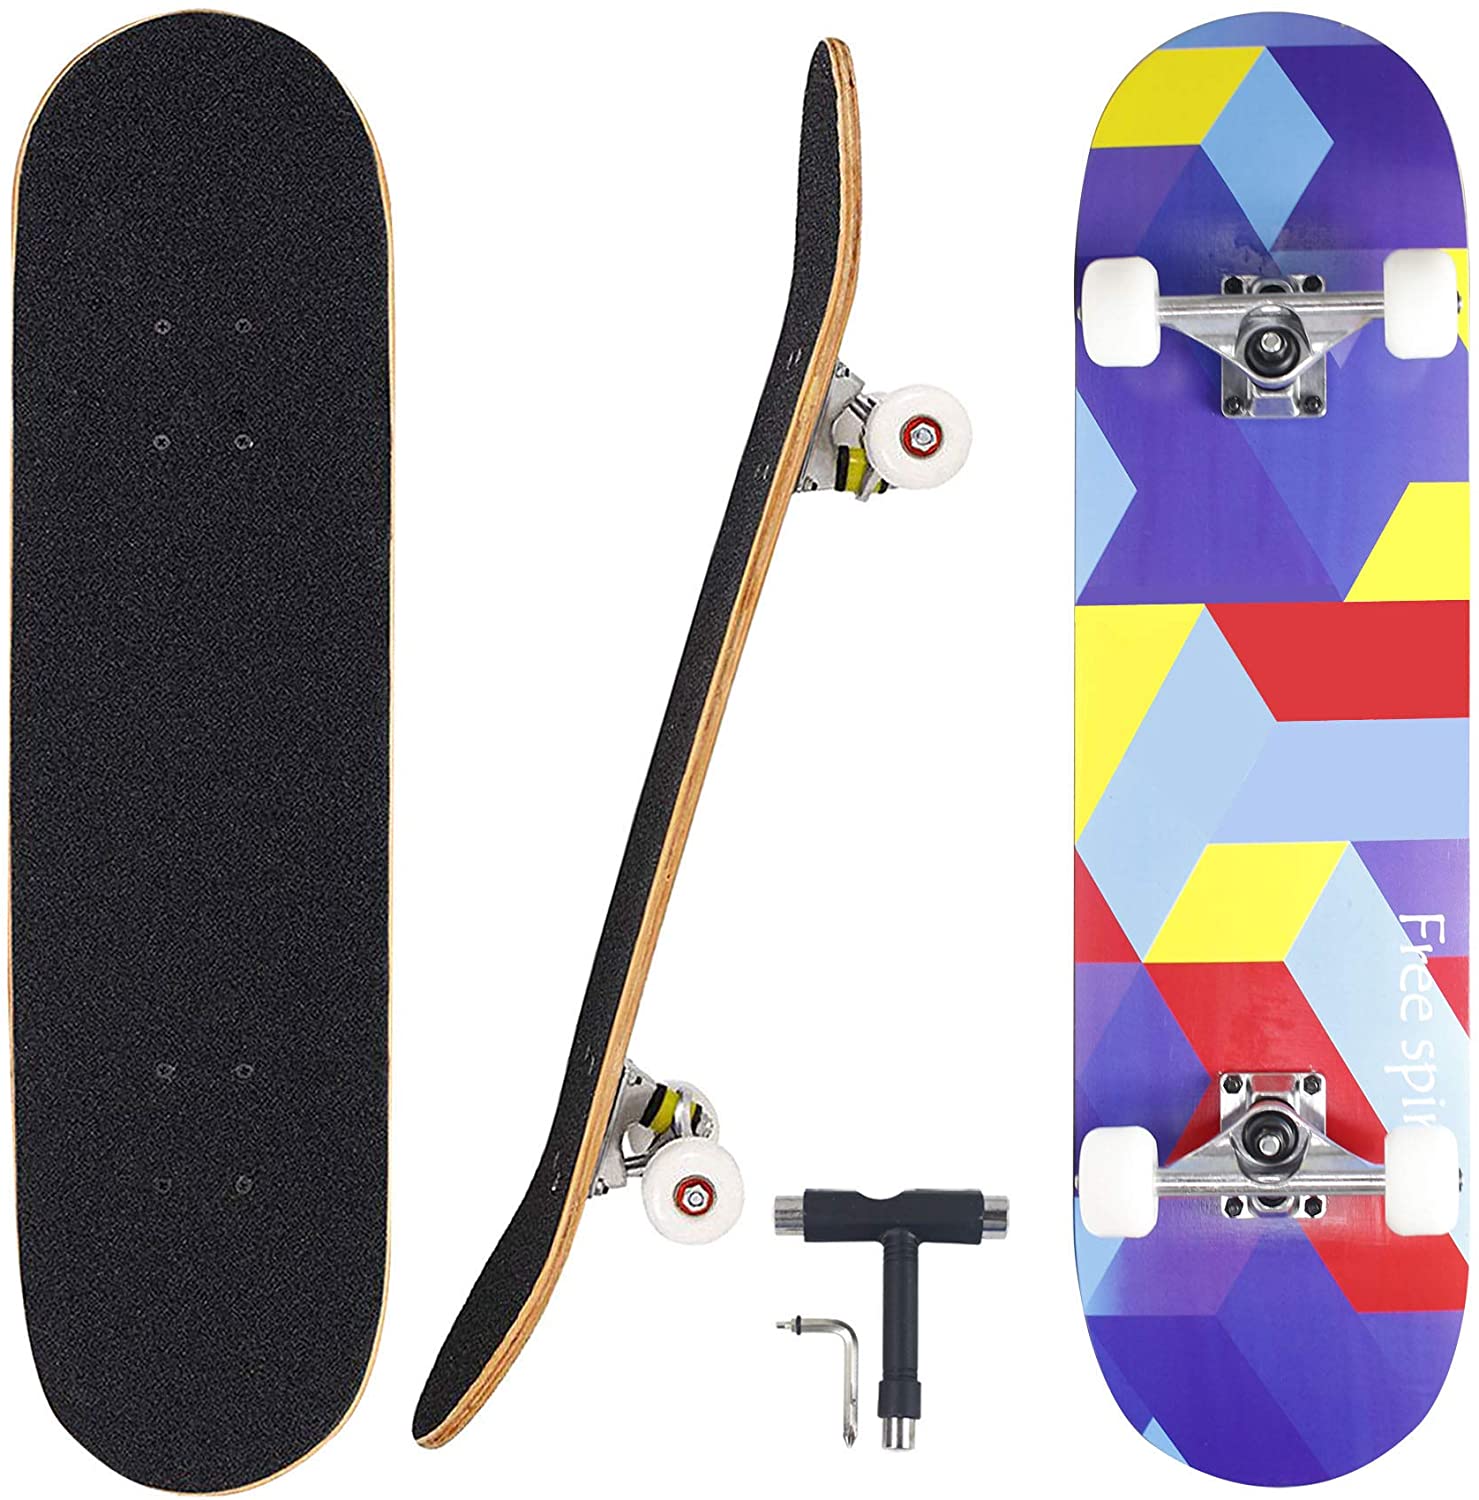 Skateboard 7 Layers Decks 31/"x8/" Pro Complete Skate Board Maple Wood Longboards